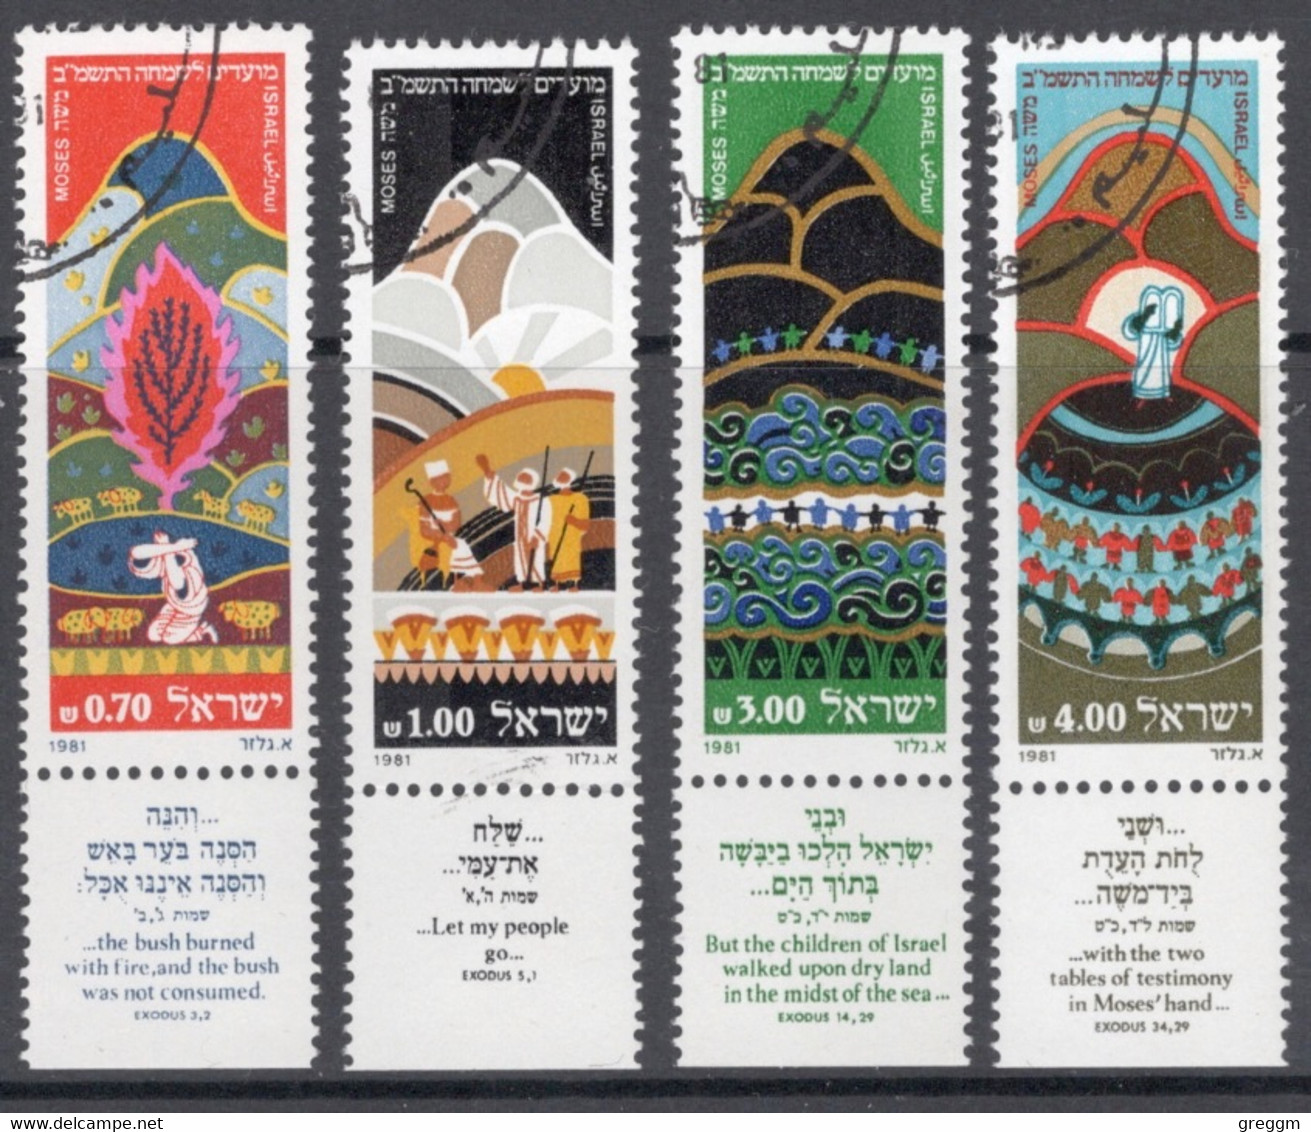 Israel 1981 Set Of Stamps Celebrating New Year In Fine Used With Tabs - Gebruikt (met Tabs)